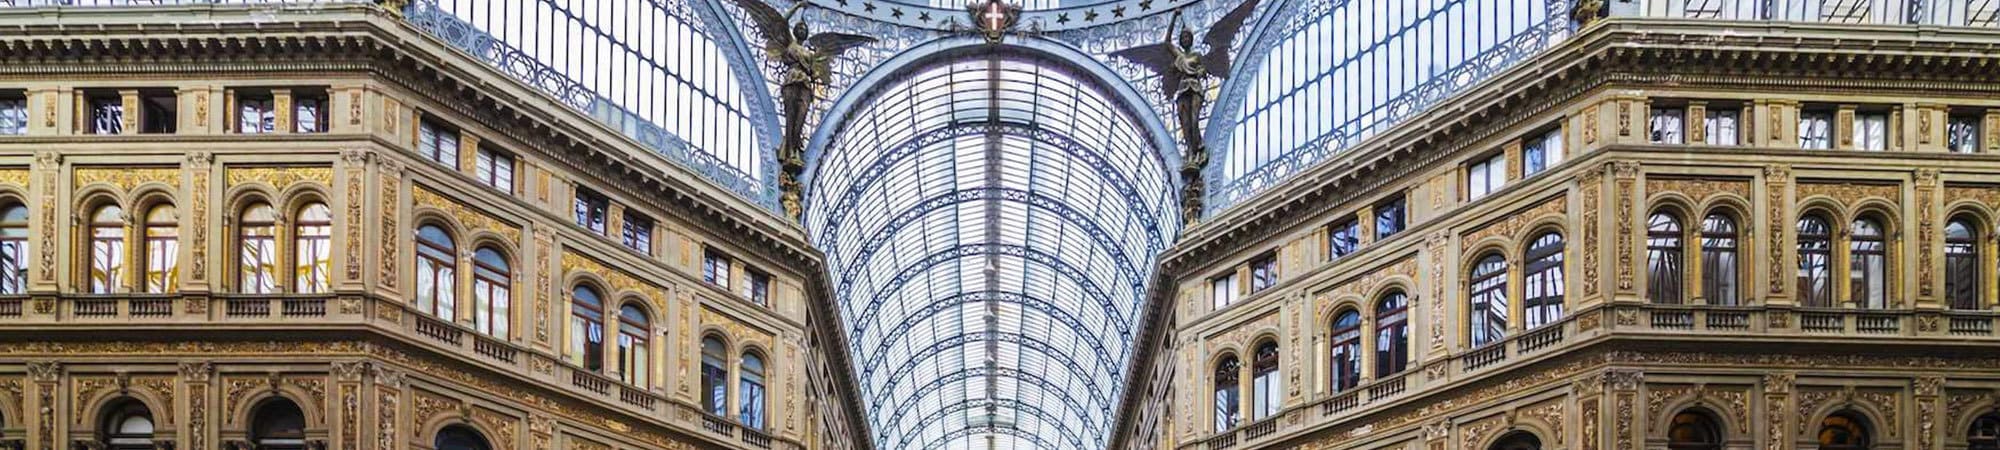 Galleria Umberto Naples Fiorentino Associati